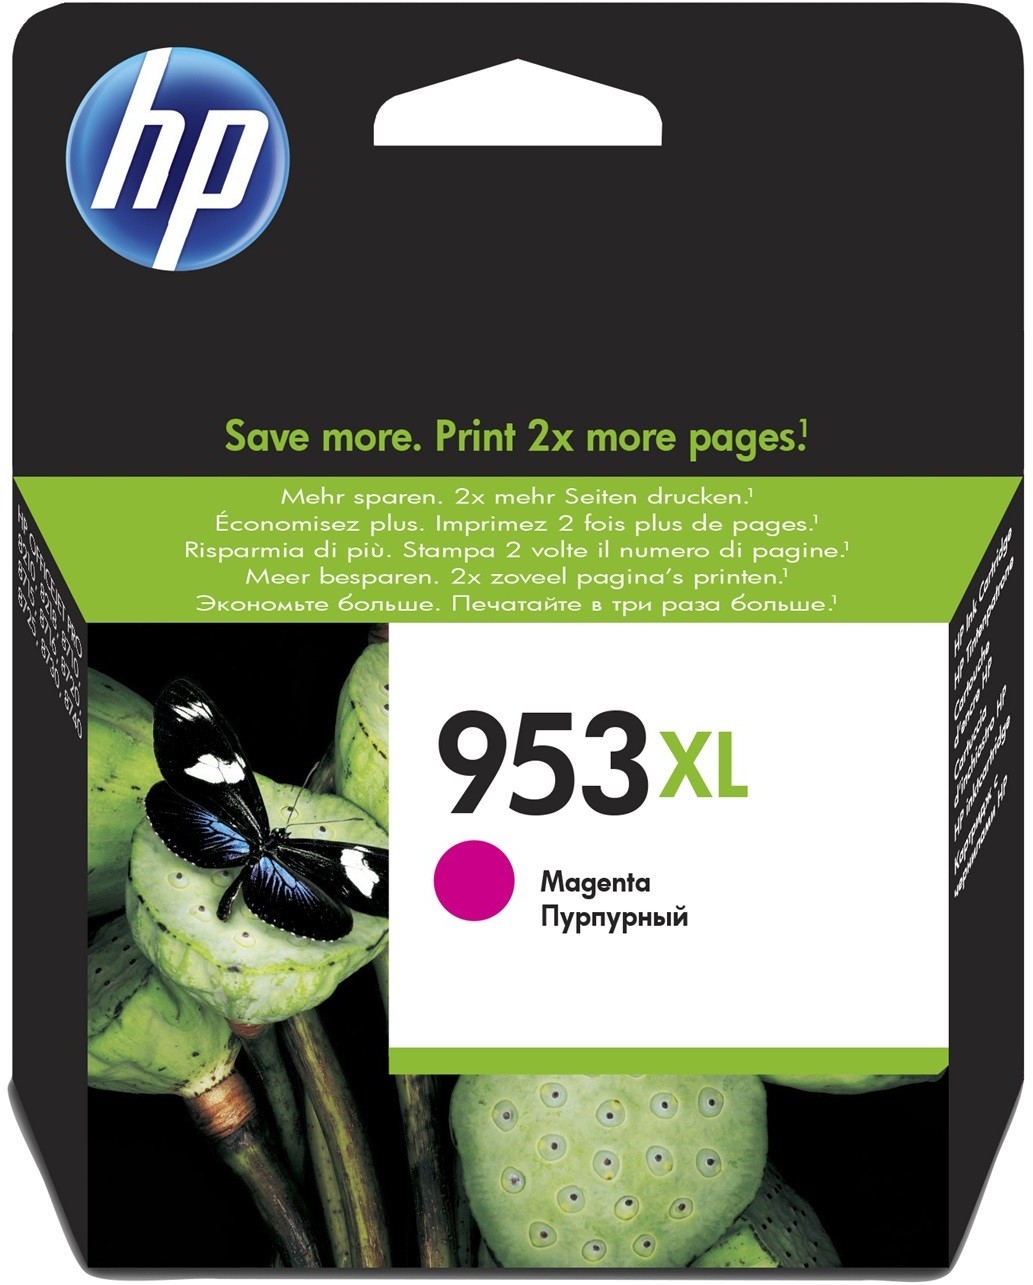 HP 652 trois couleurs - Cartouche d'encre HP d'origine (F6V24AE) prix Maroc